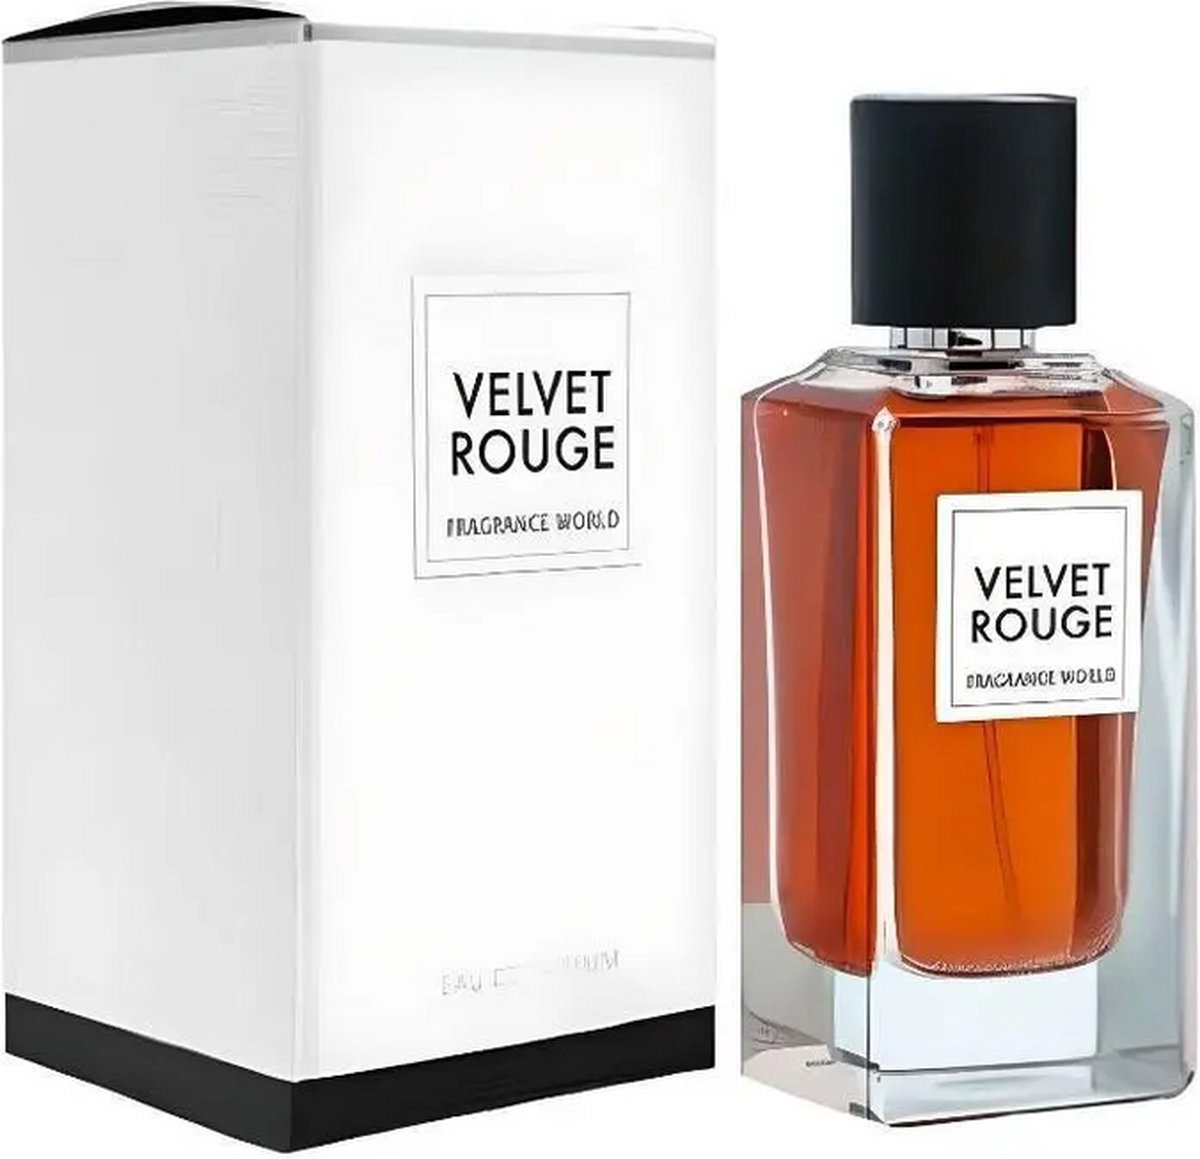 Velvet Rouge - Fragrance World - Eau de parfum